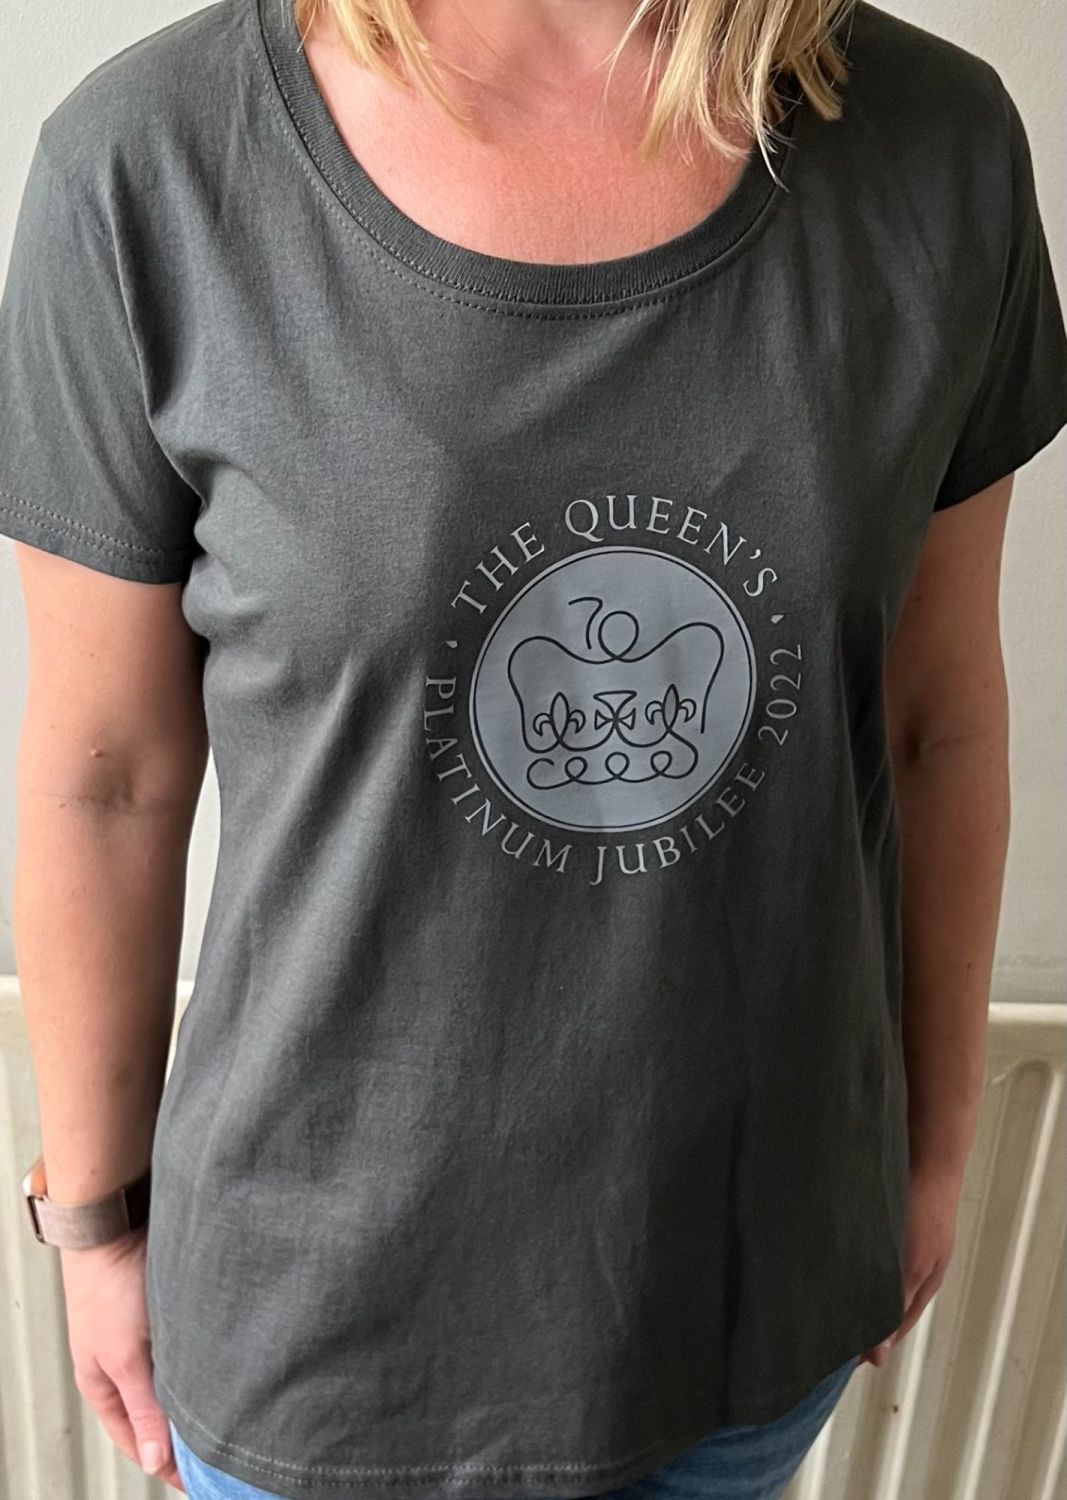 Women's, Men's & Kid's Commemorative Merchandise - T Shirt - The Queen's Pl